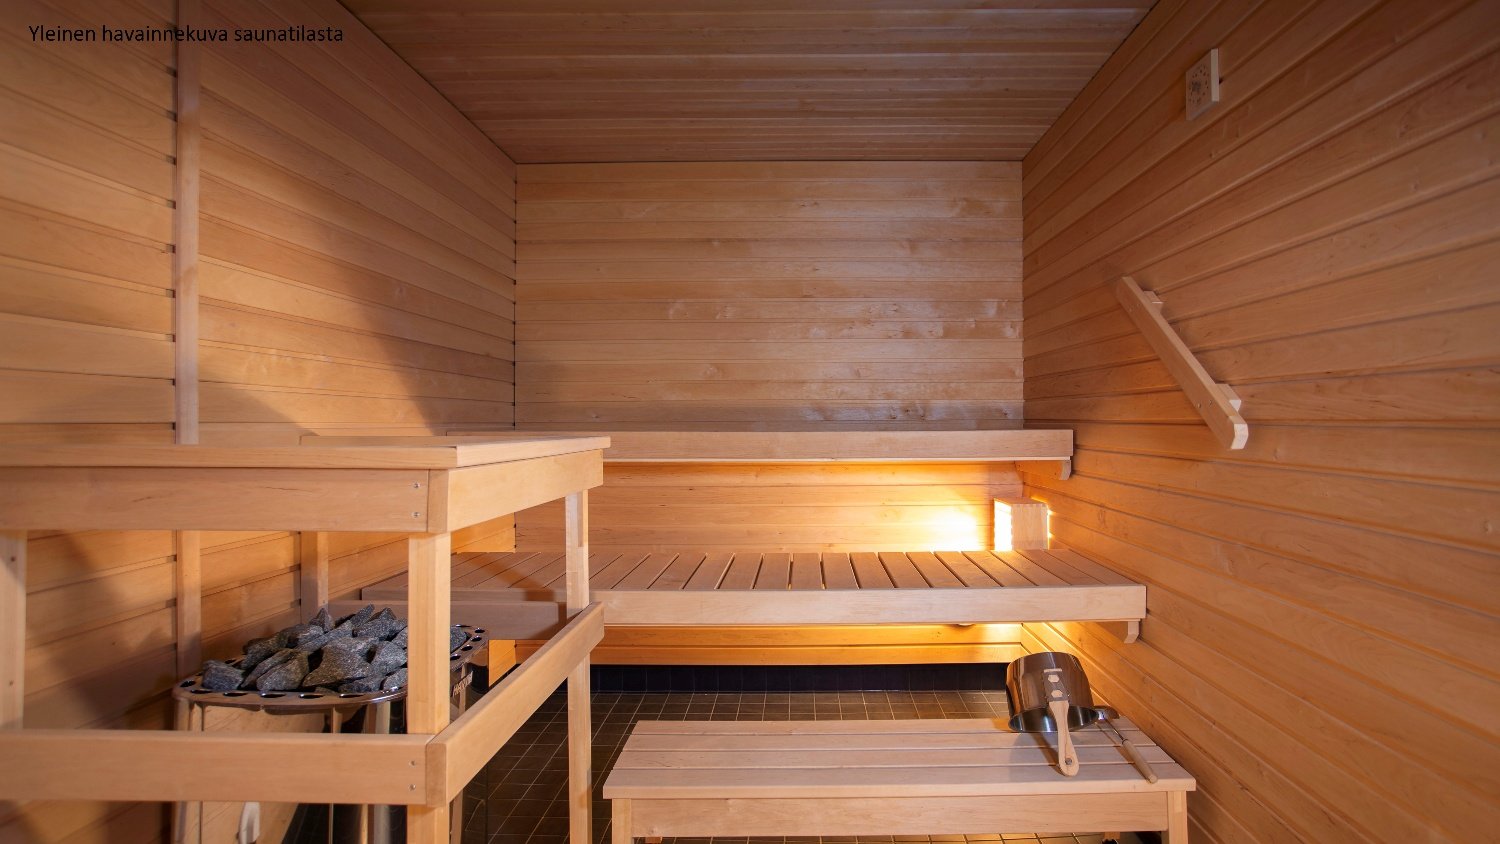 Varte-sauna-malli-1500x844